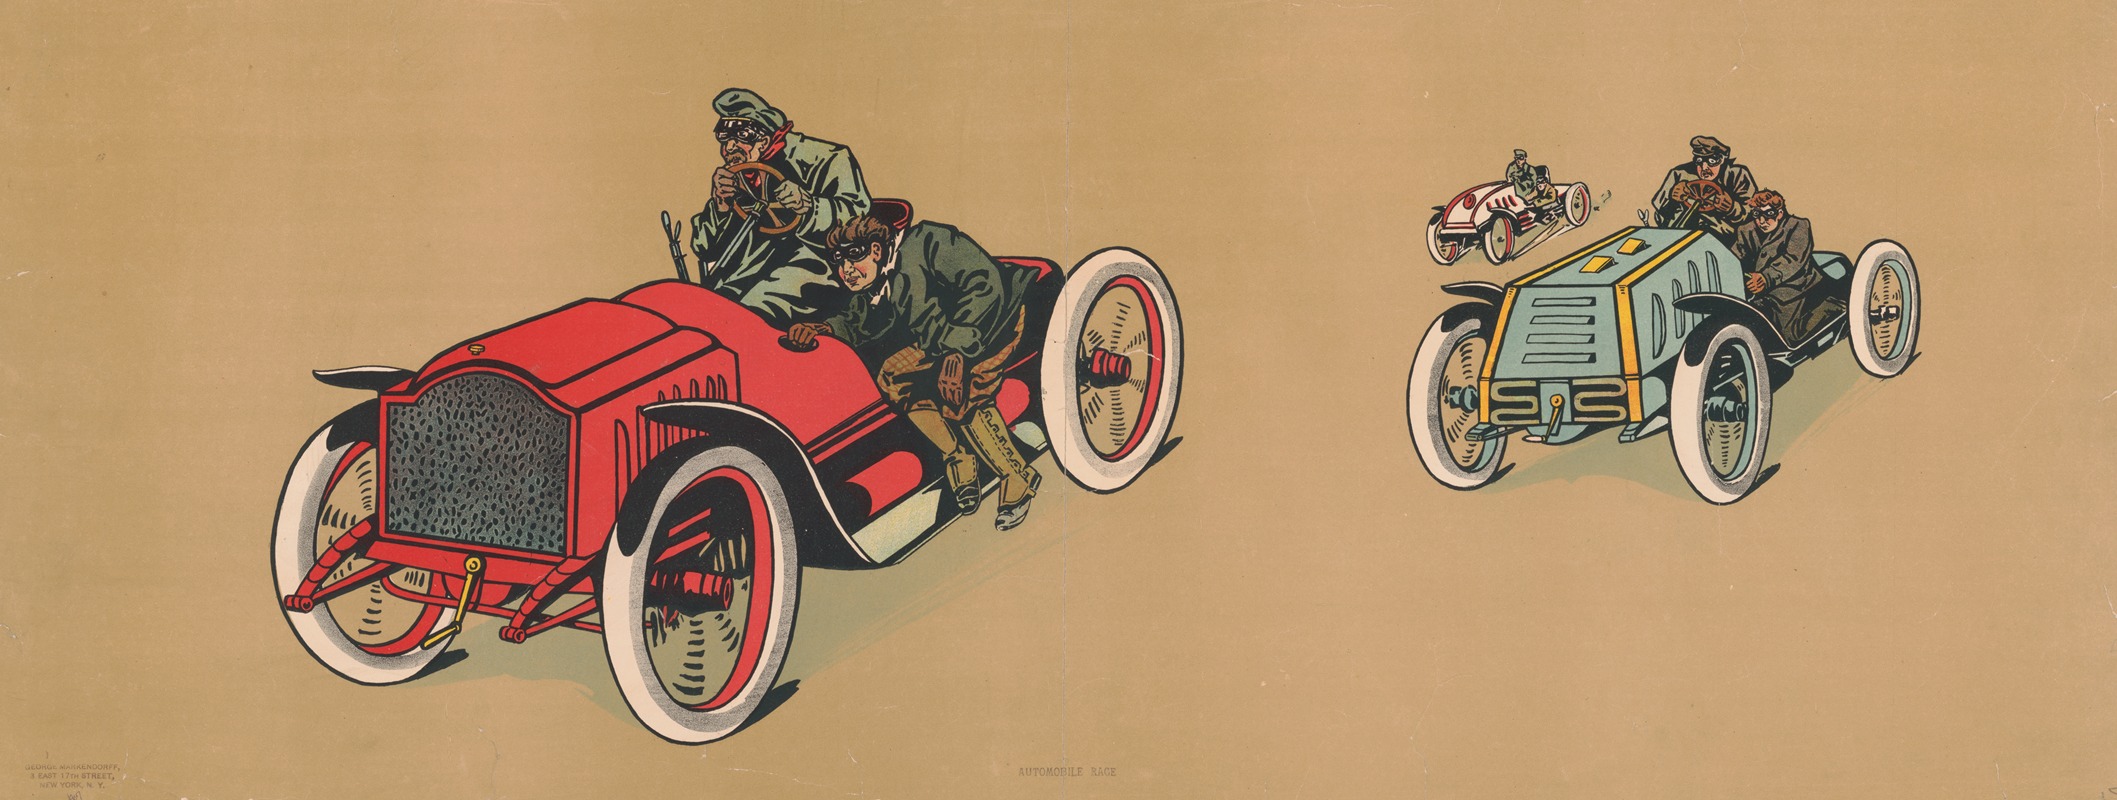 George Markendorff - Automobile race